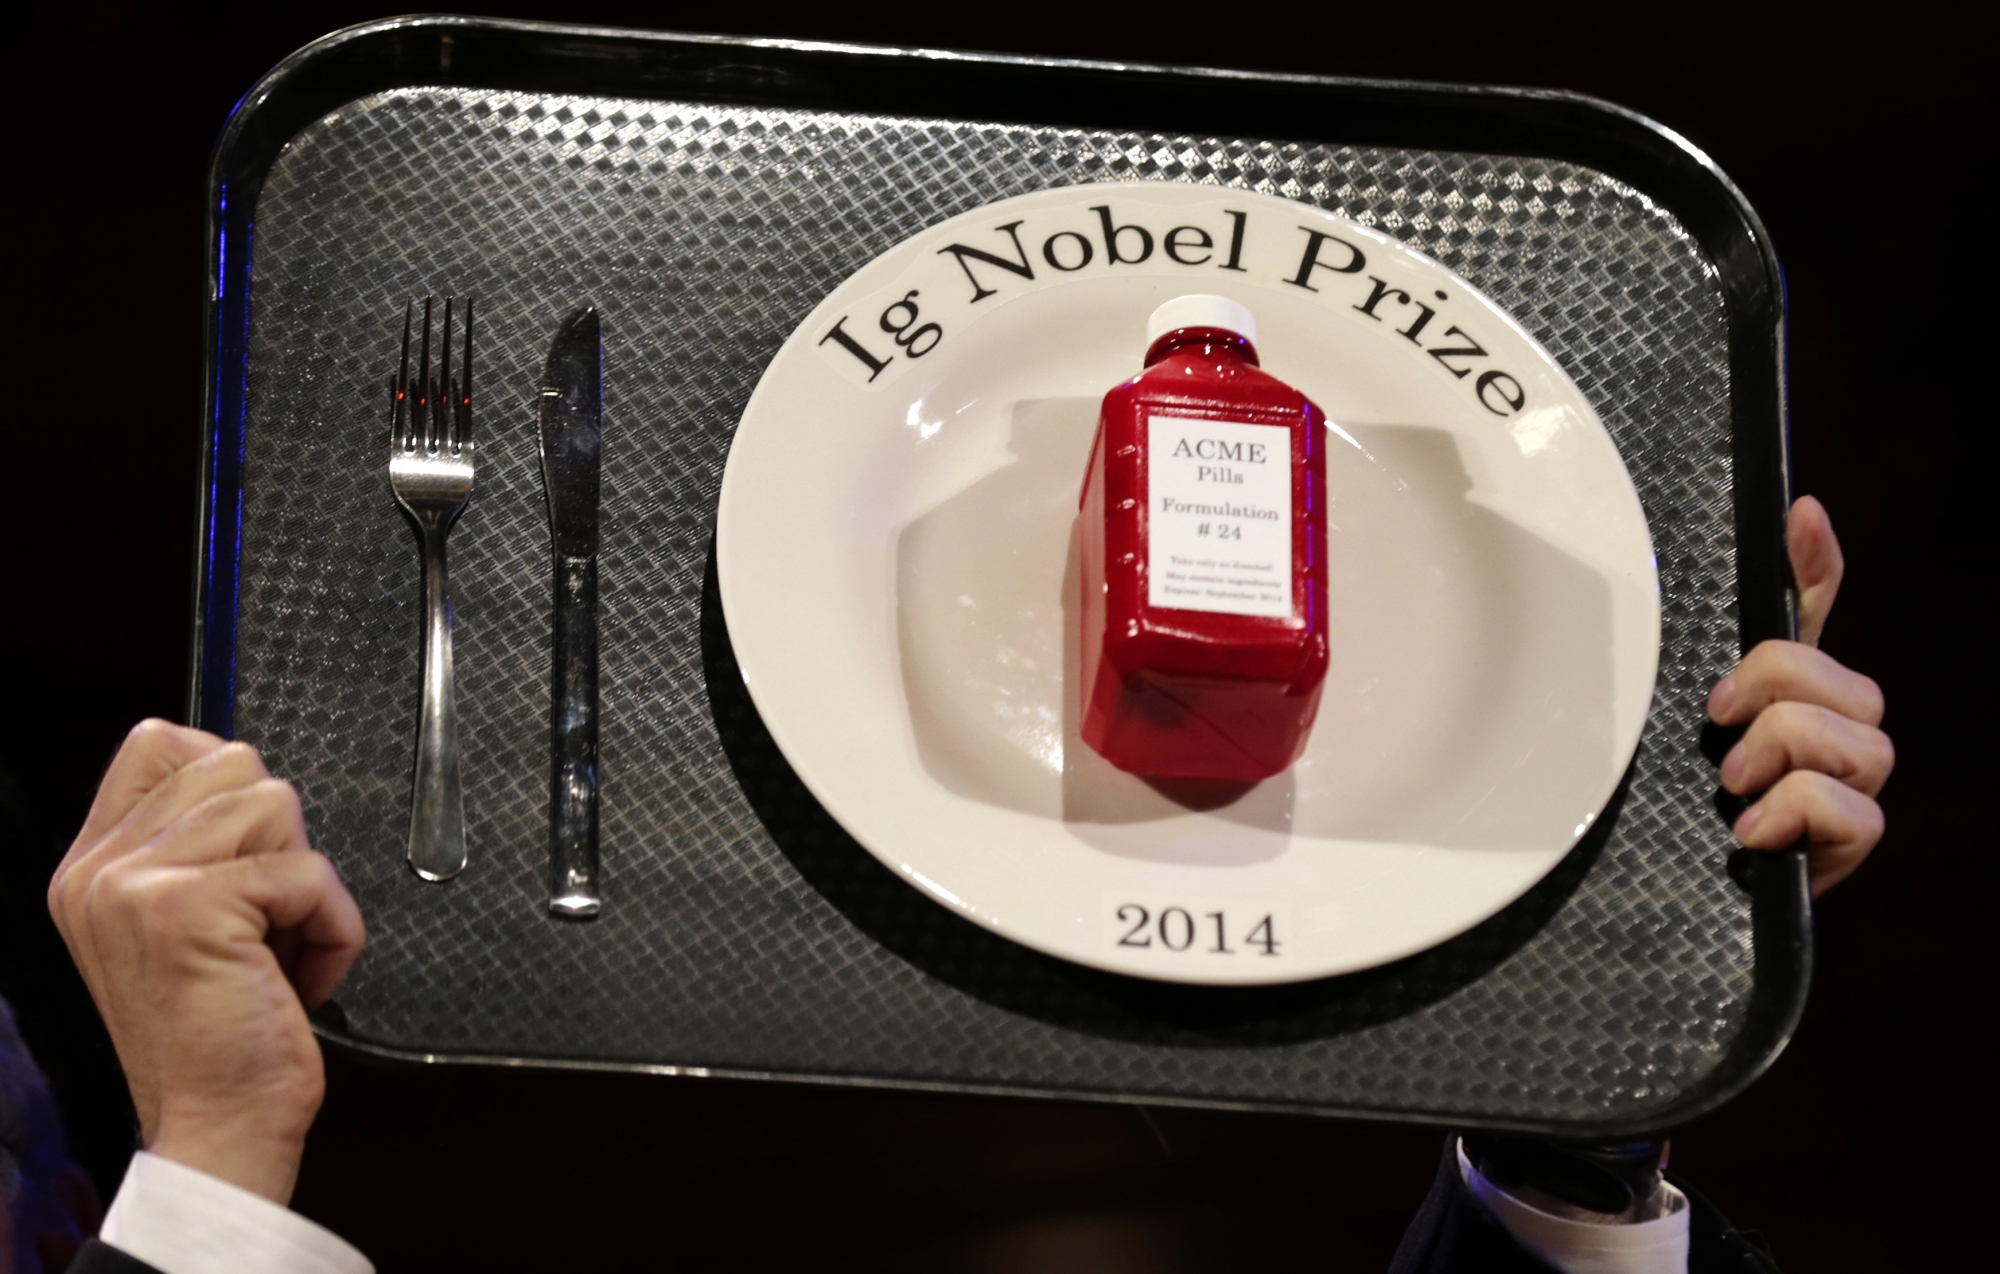 Le prix Ig Nobel est attribué chaque année à une dizaine de recherches scientifiques qui paraissent insolites, mais qui amènent à réfléchir.